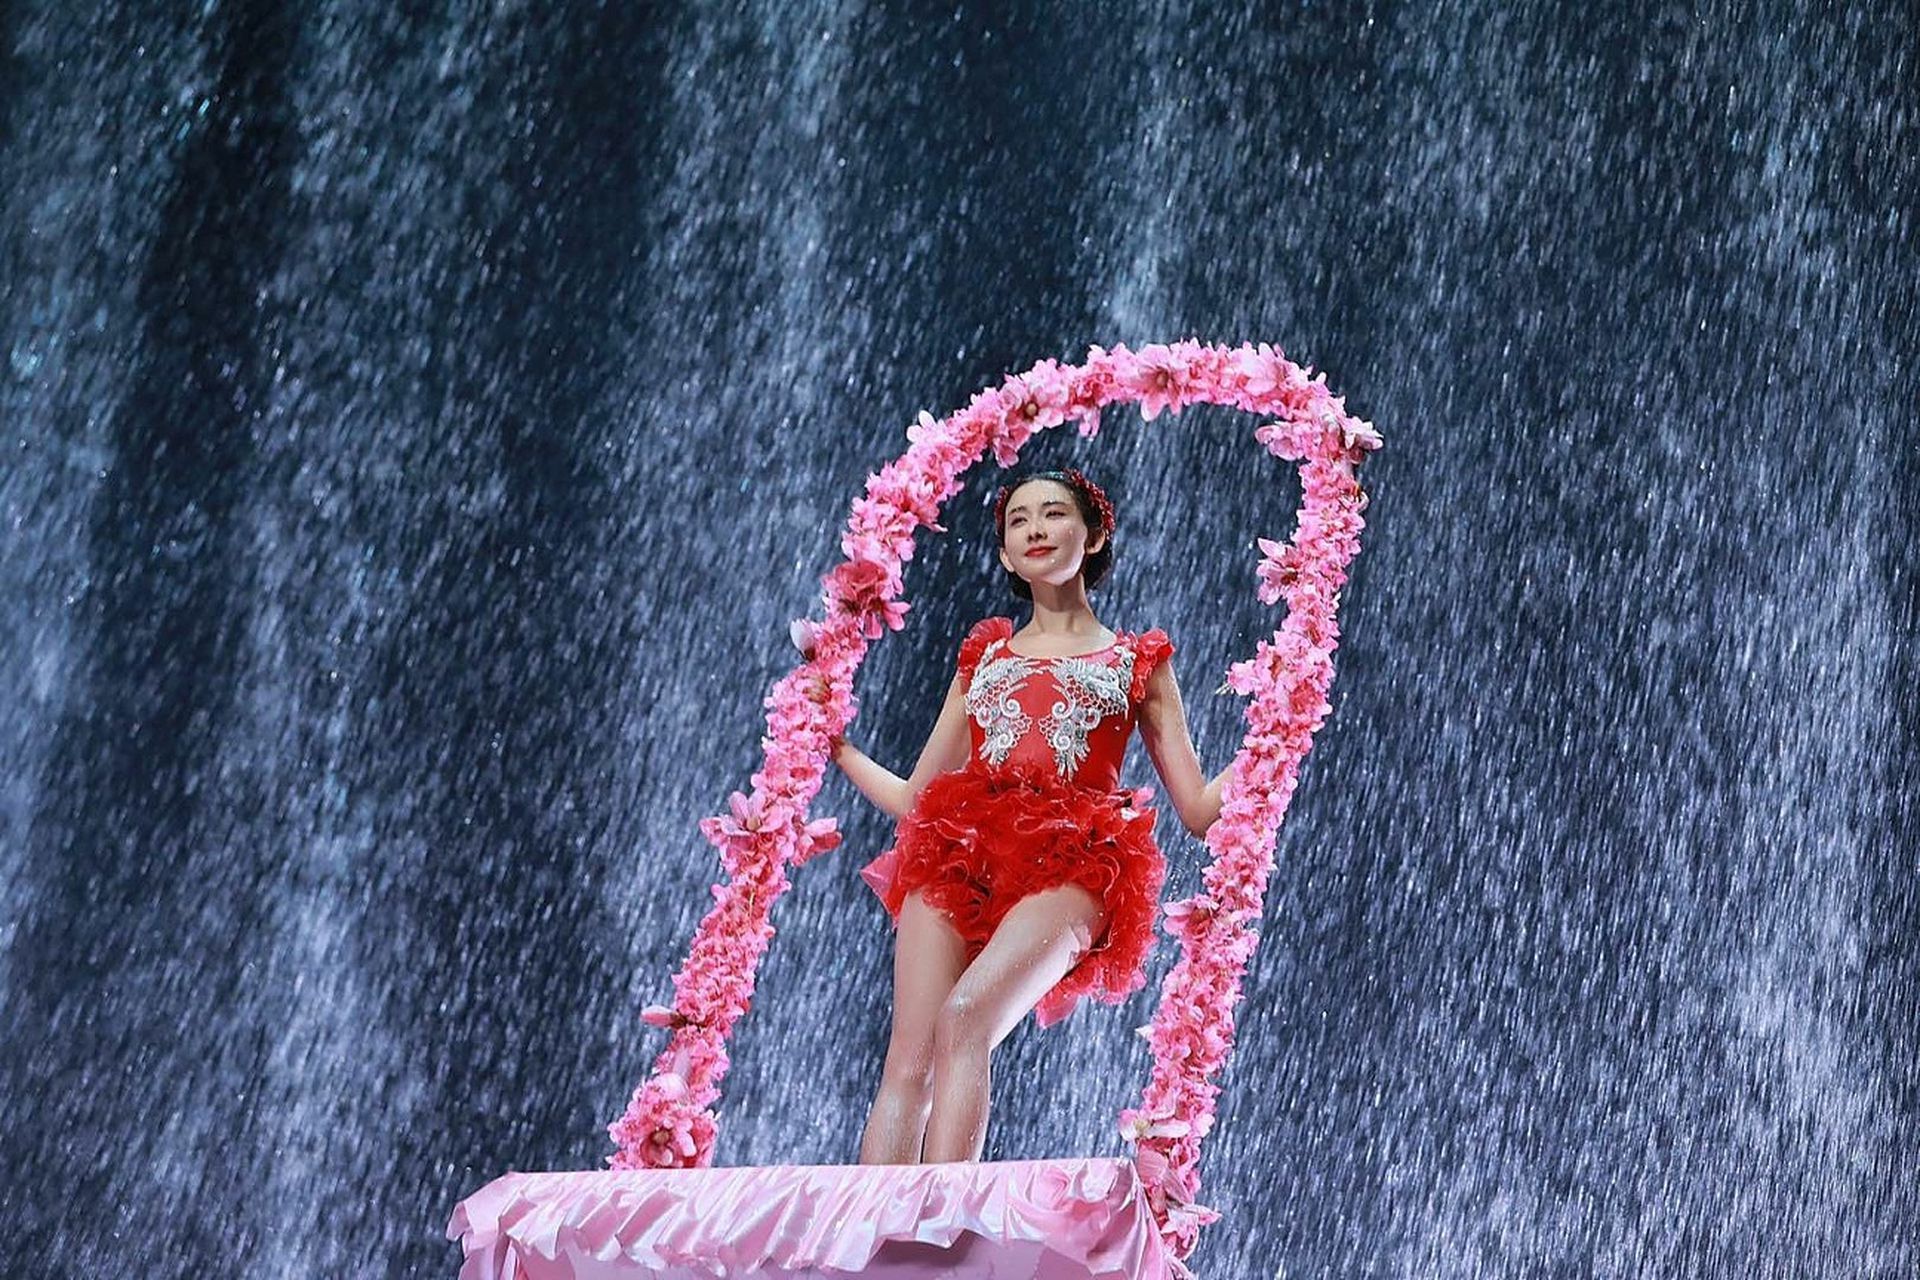 中国央视春晚较为重视与香港、澳门、台湾等地互动，图为2019年台湾艺人林志玲在春晚舞台表演水上芭蕾曲目《绽放》，其造型之美在网上引起不小的热议。（VCG）